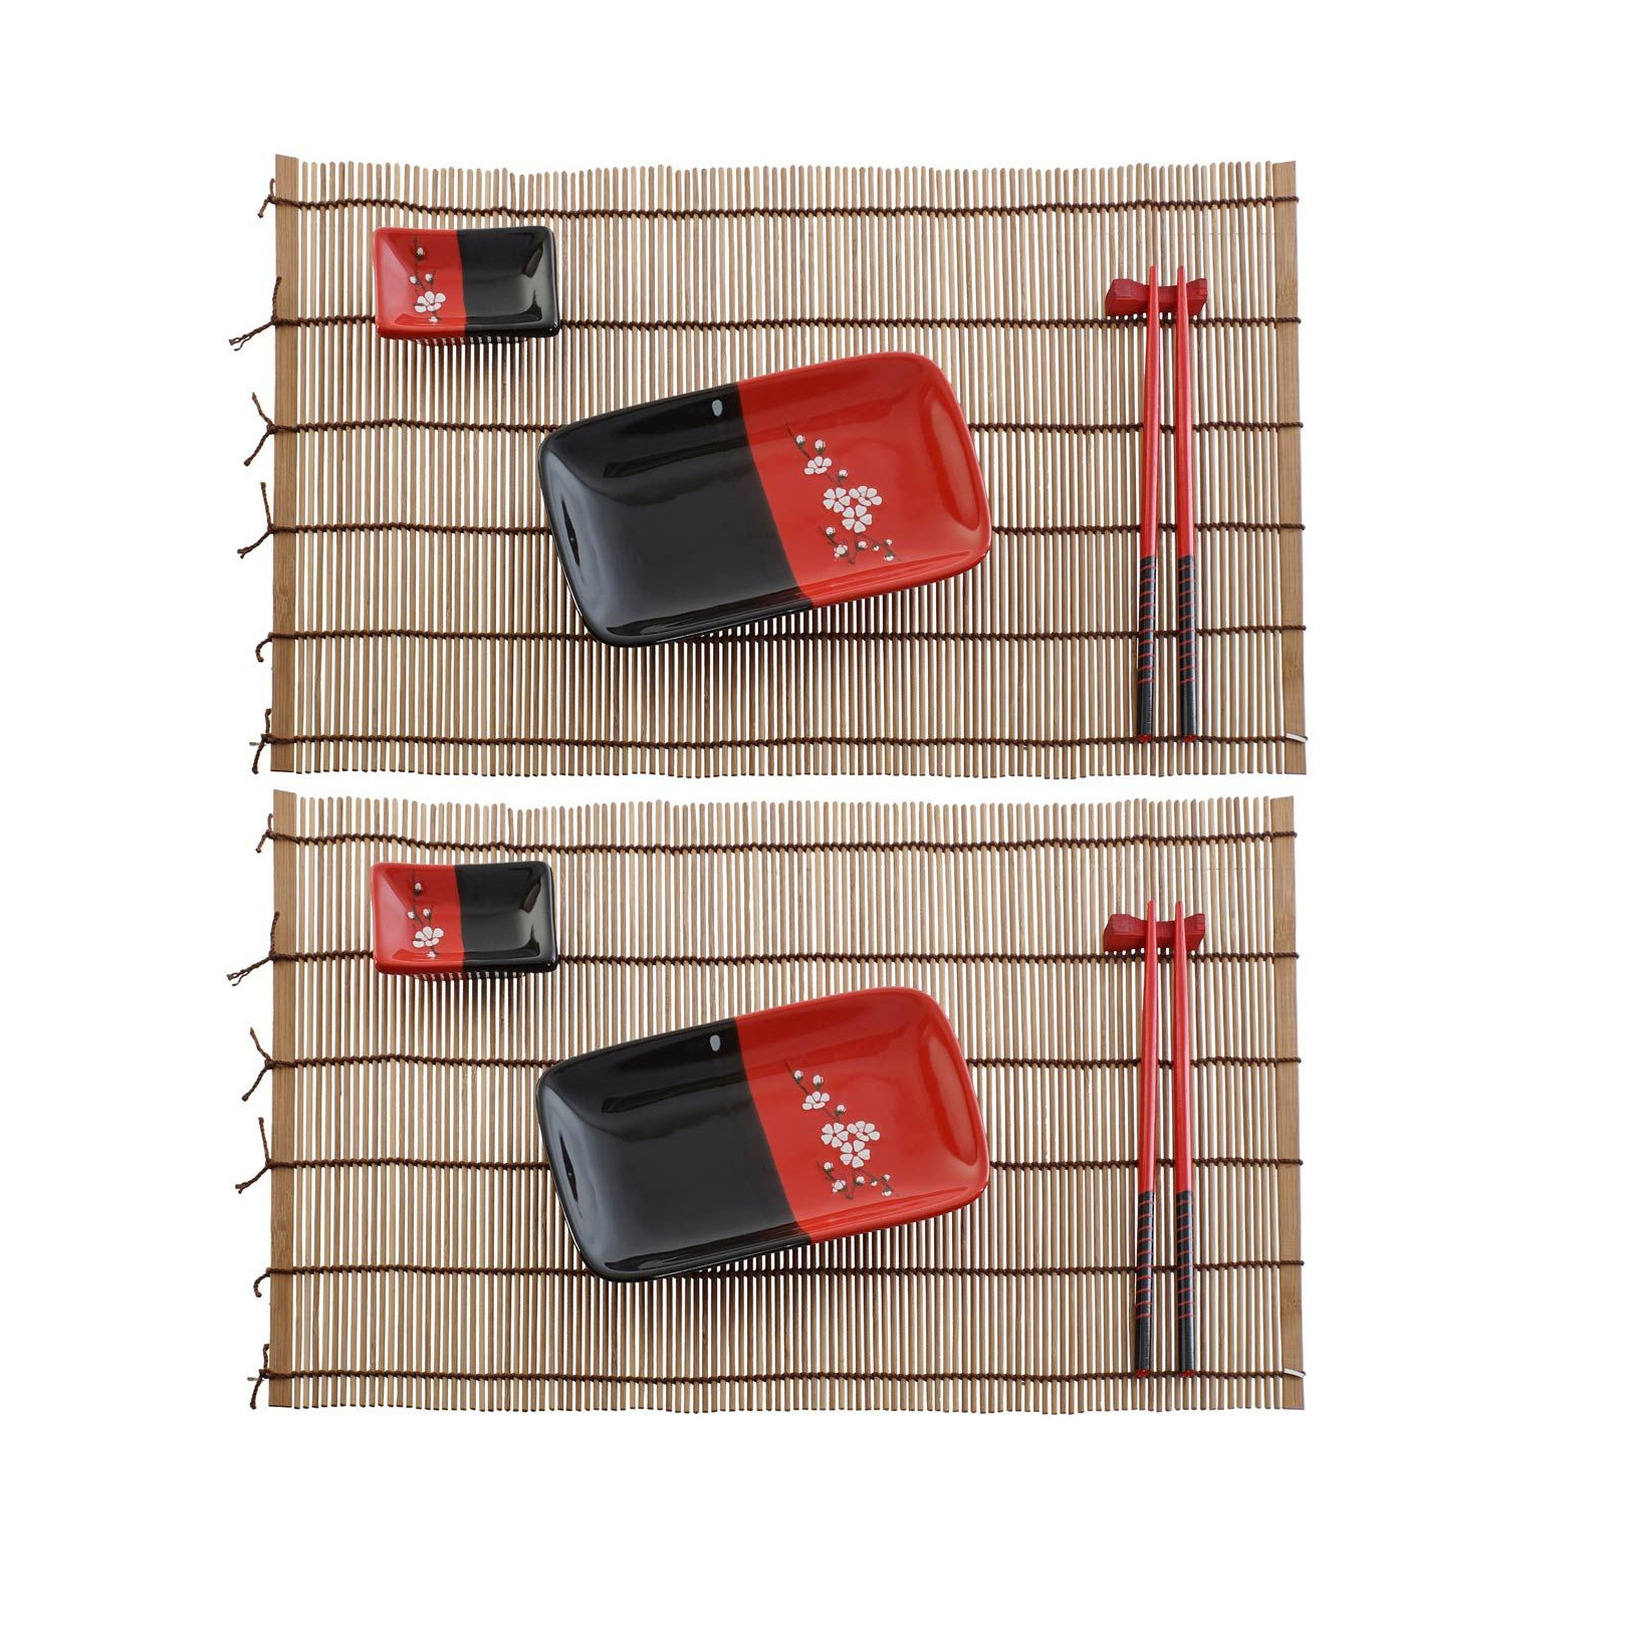 Items 10-delige sushi serveer set keramiek voor 2 personen zwart/rood -